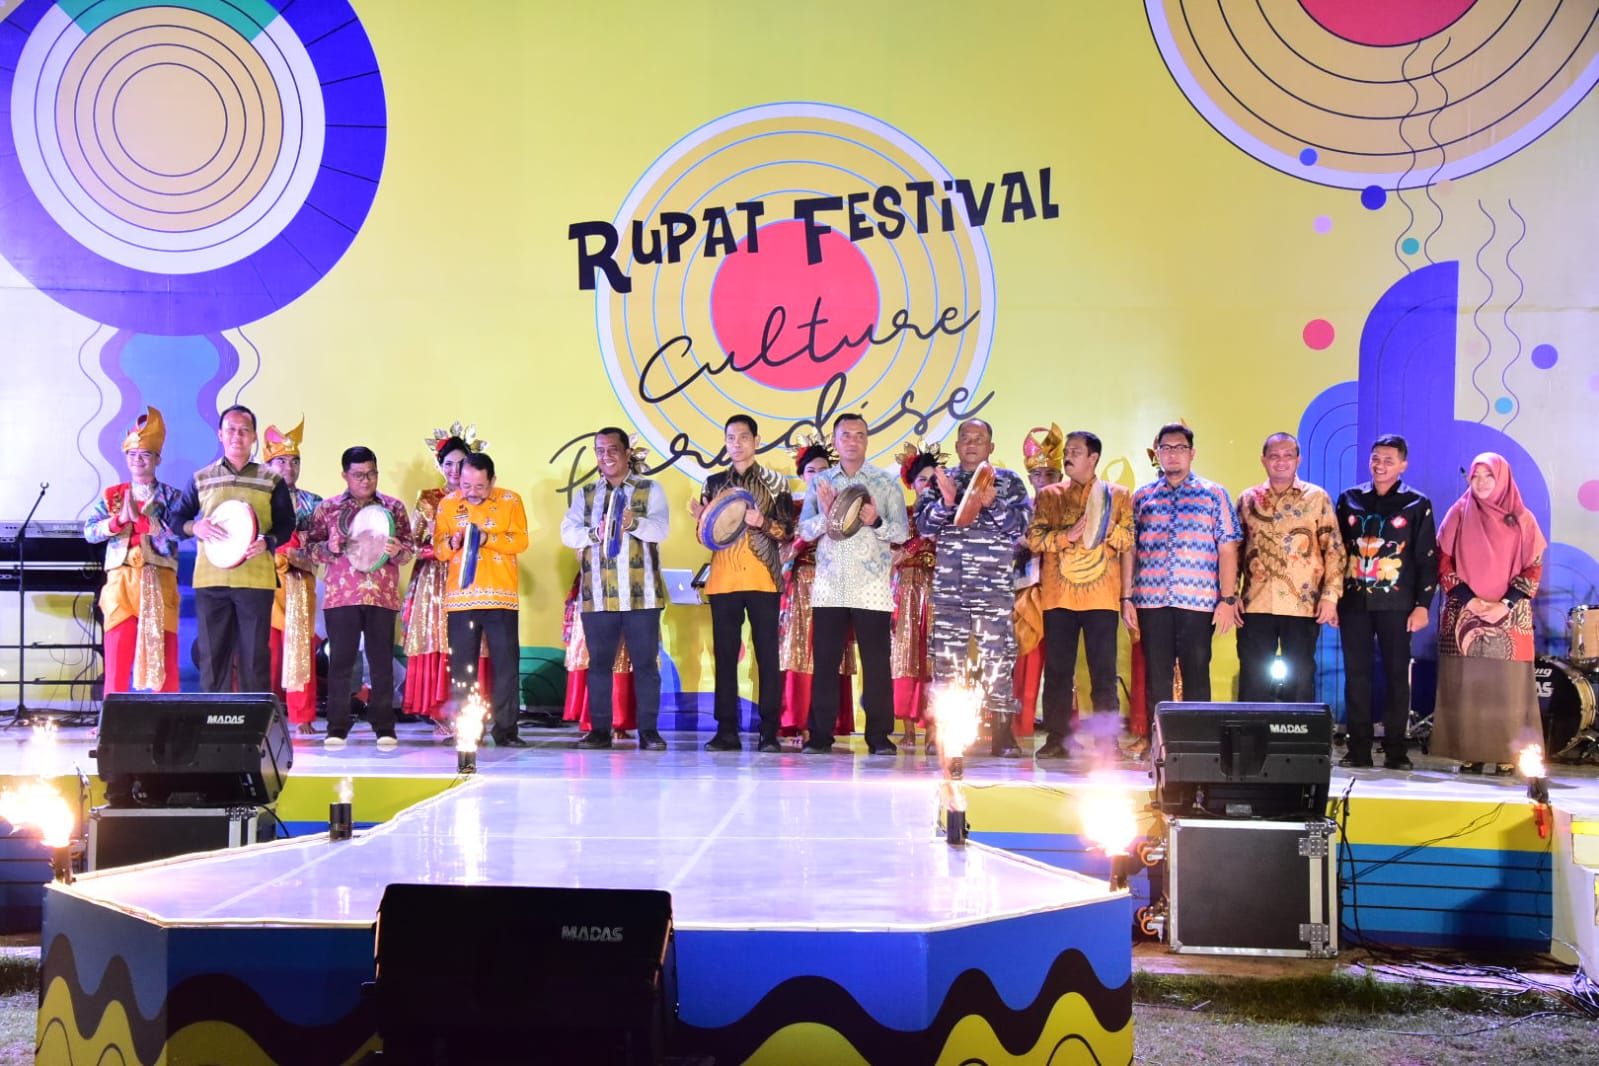 Hadiri Rupat Festival Culture Paradise, Pemkab Bengkalis Harapkan Sinergitas Pembangunan Industri Pariwisata